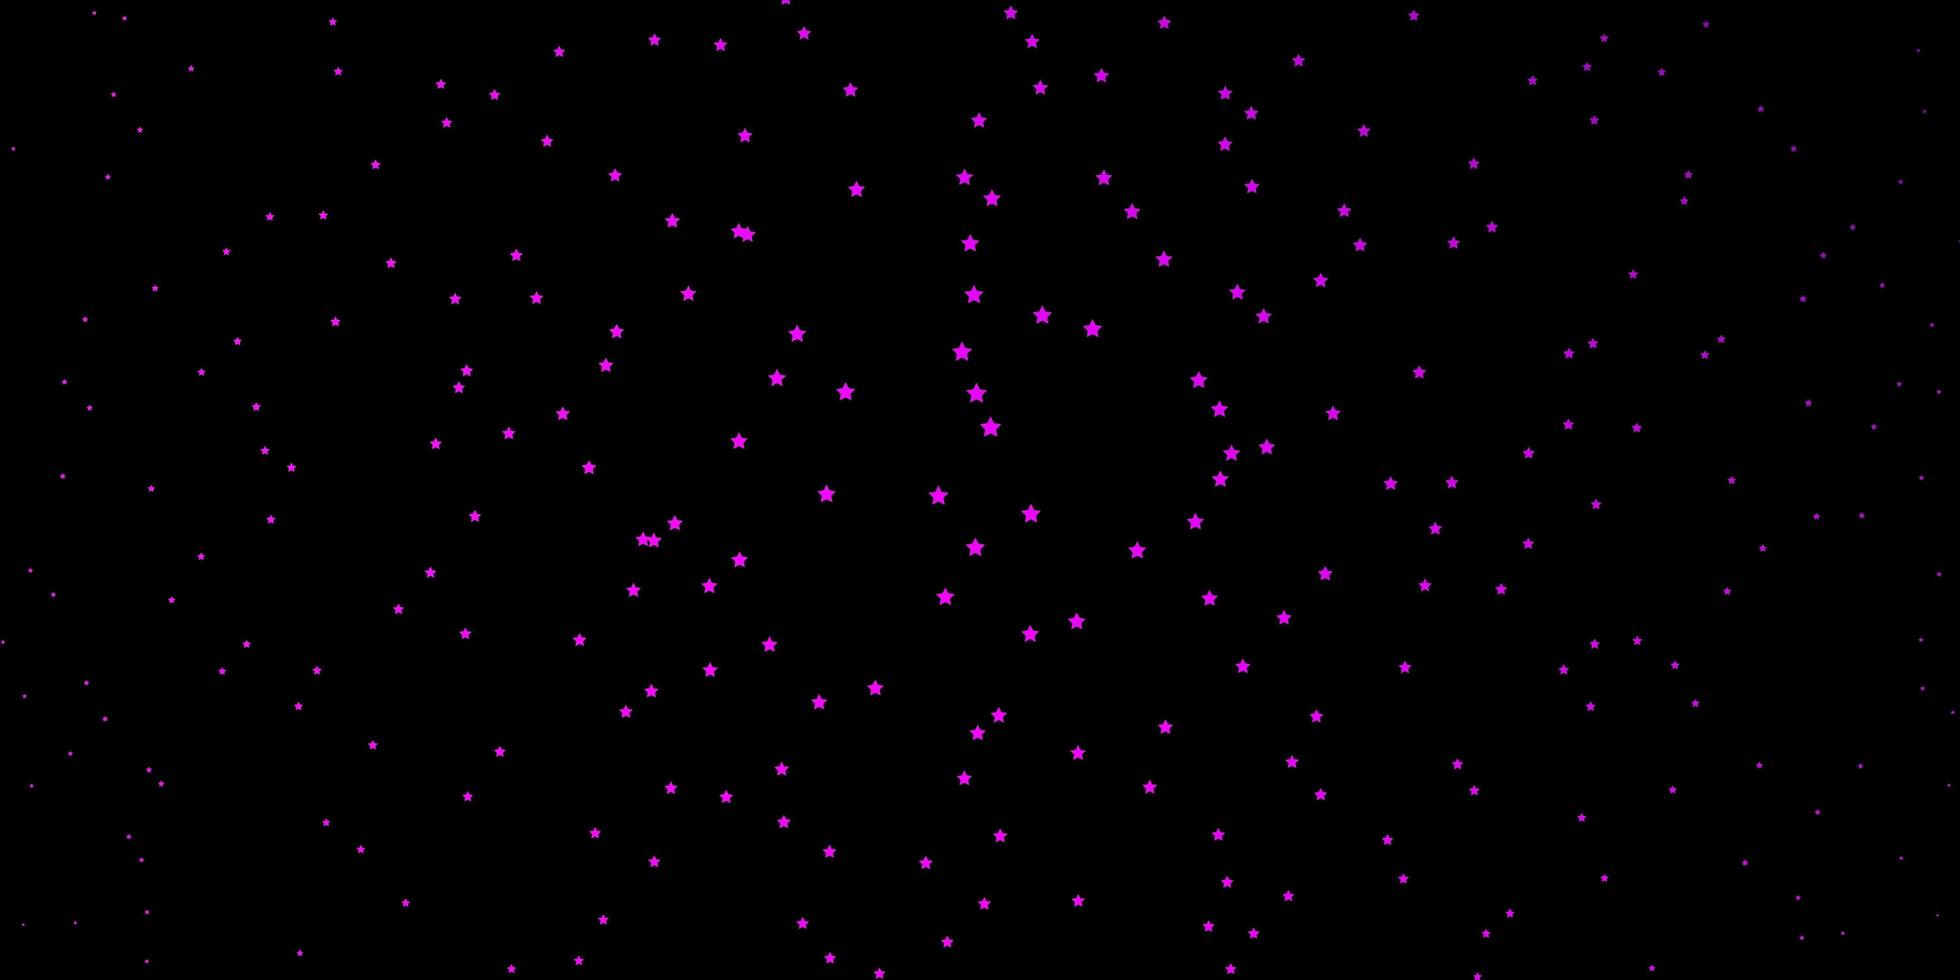 dunkelviolettes Vektorlayout mit hellen Sternen. vektor